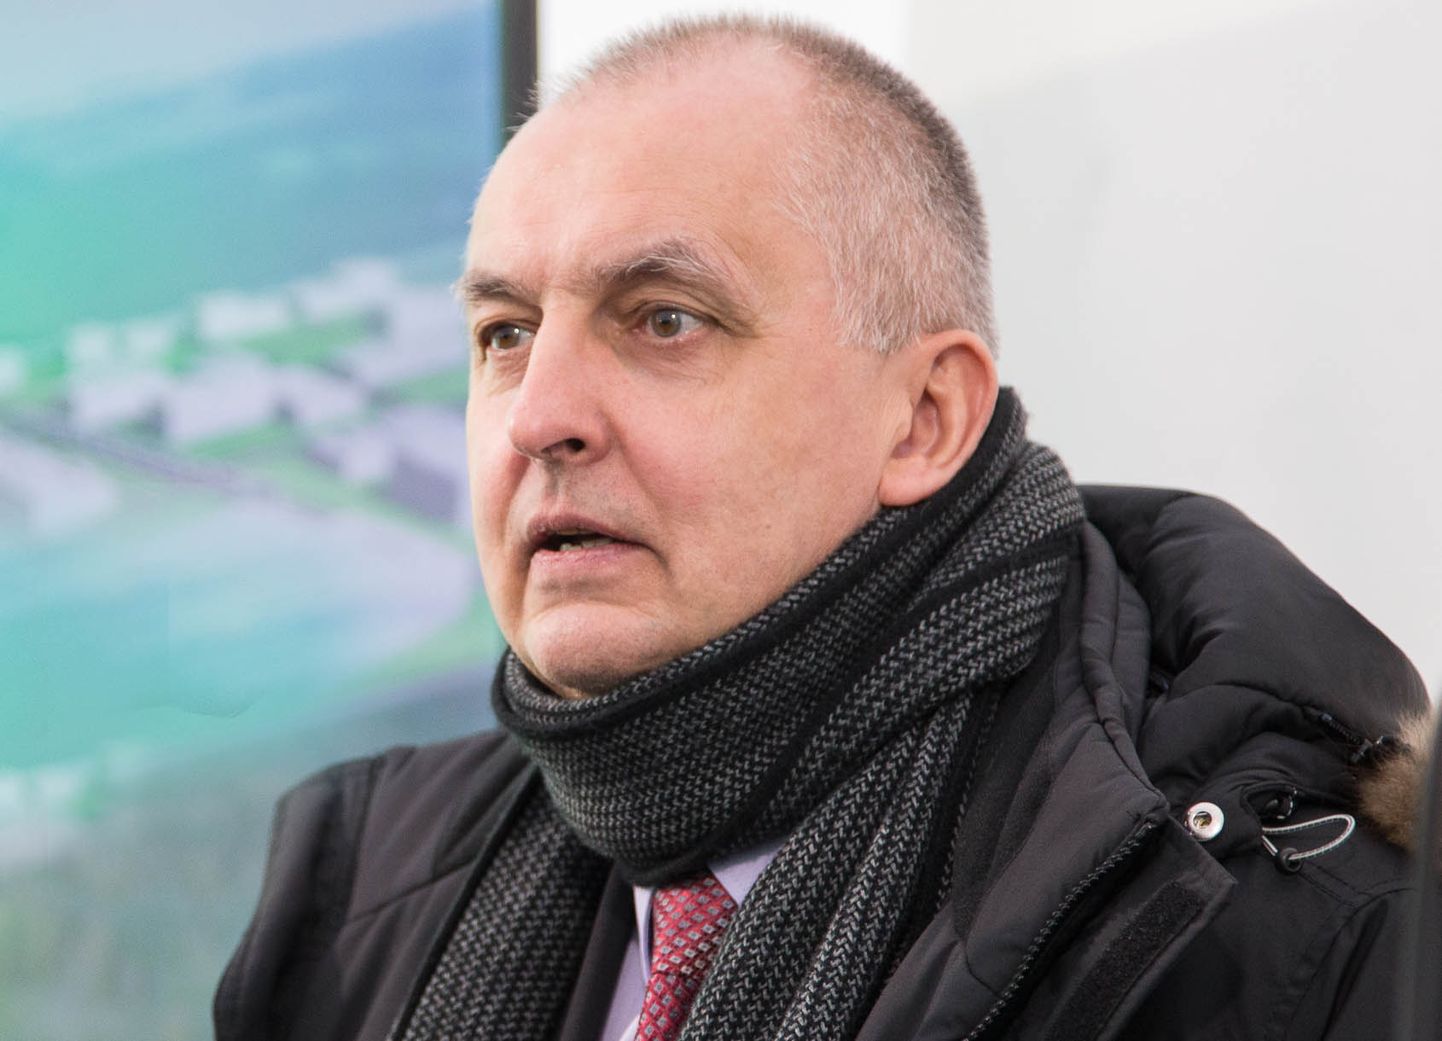 Маргус Илмъярв, руководитель Йыхвиского представительства Эстонской торгово-промышленной палаты